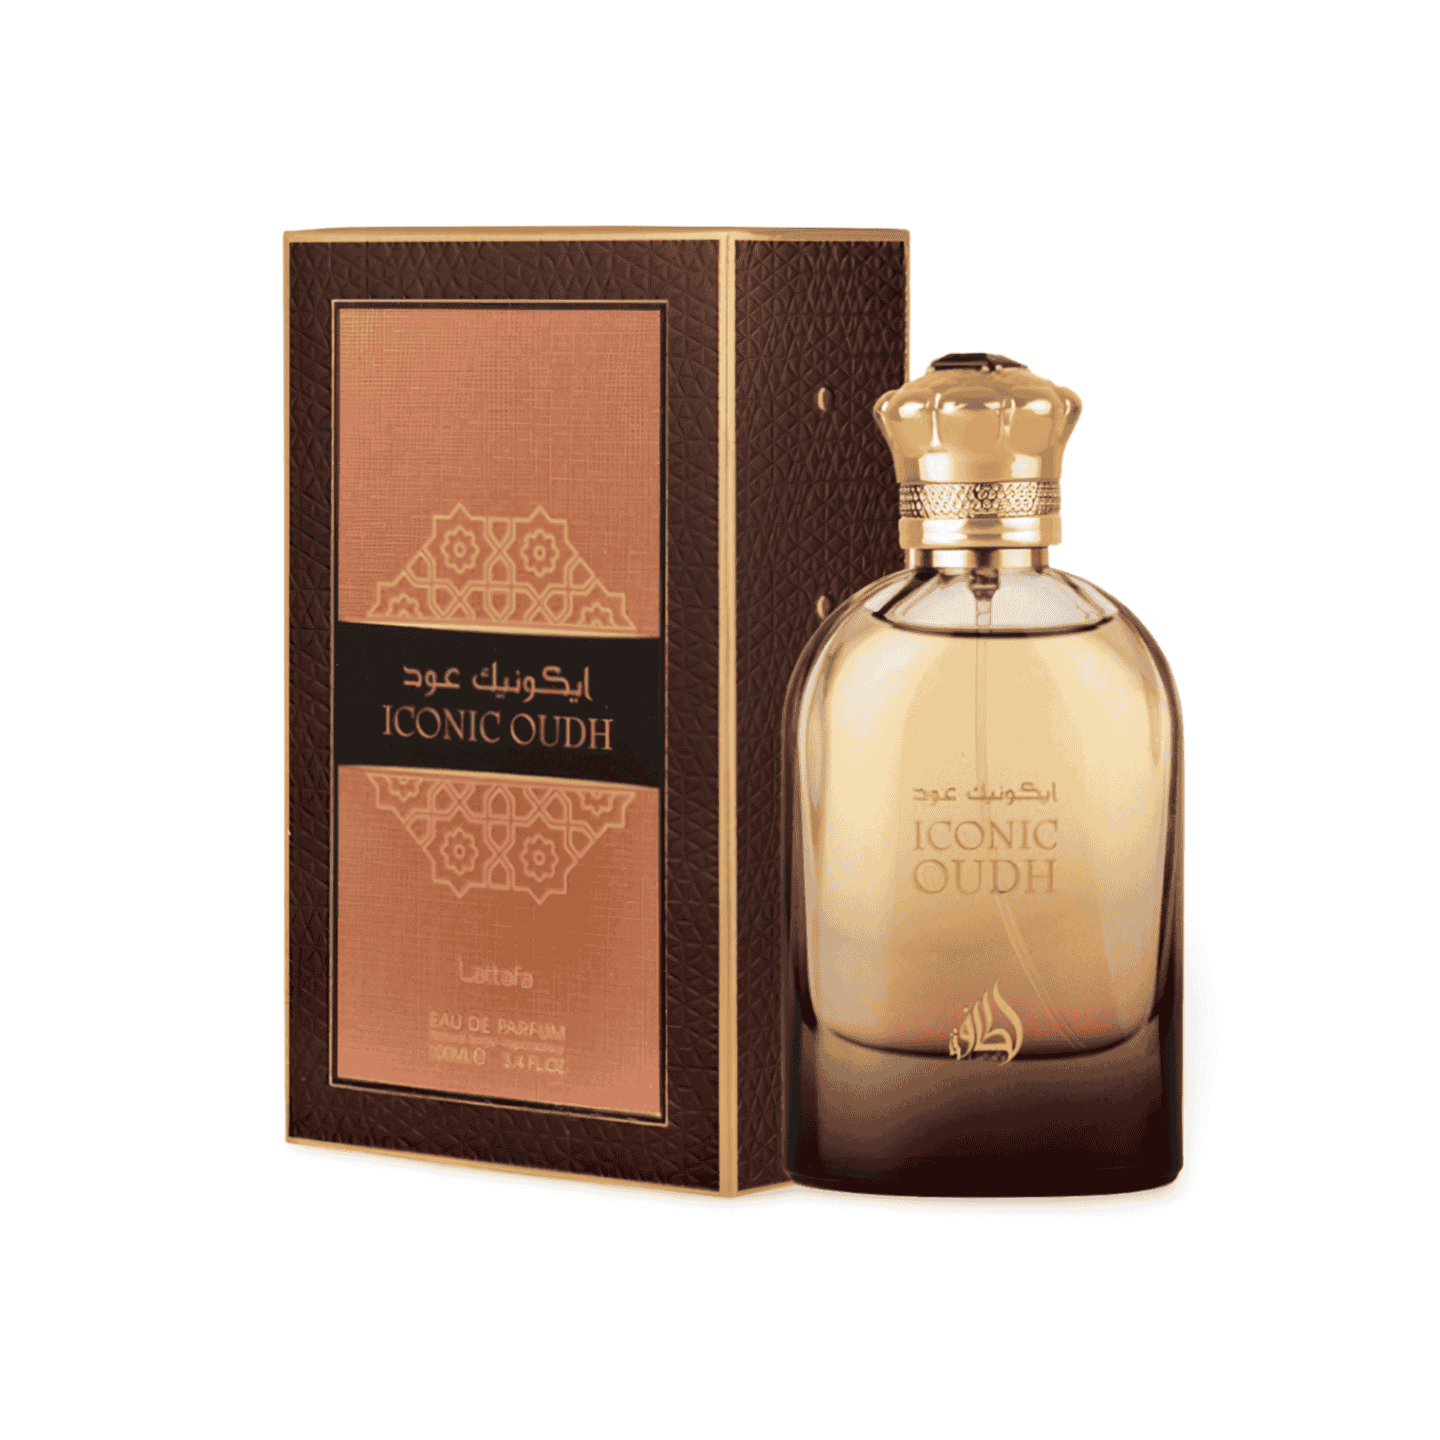 Lattafa Iconic Oudh Eau De Parfum